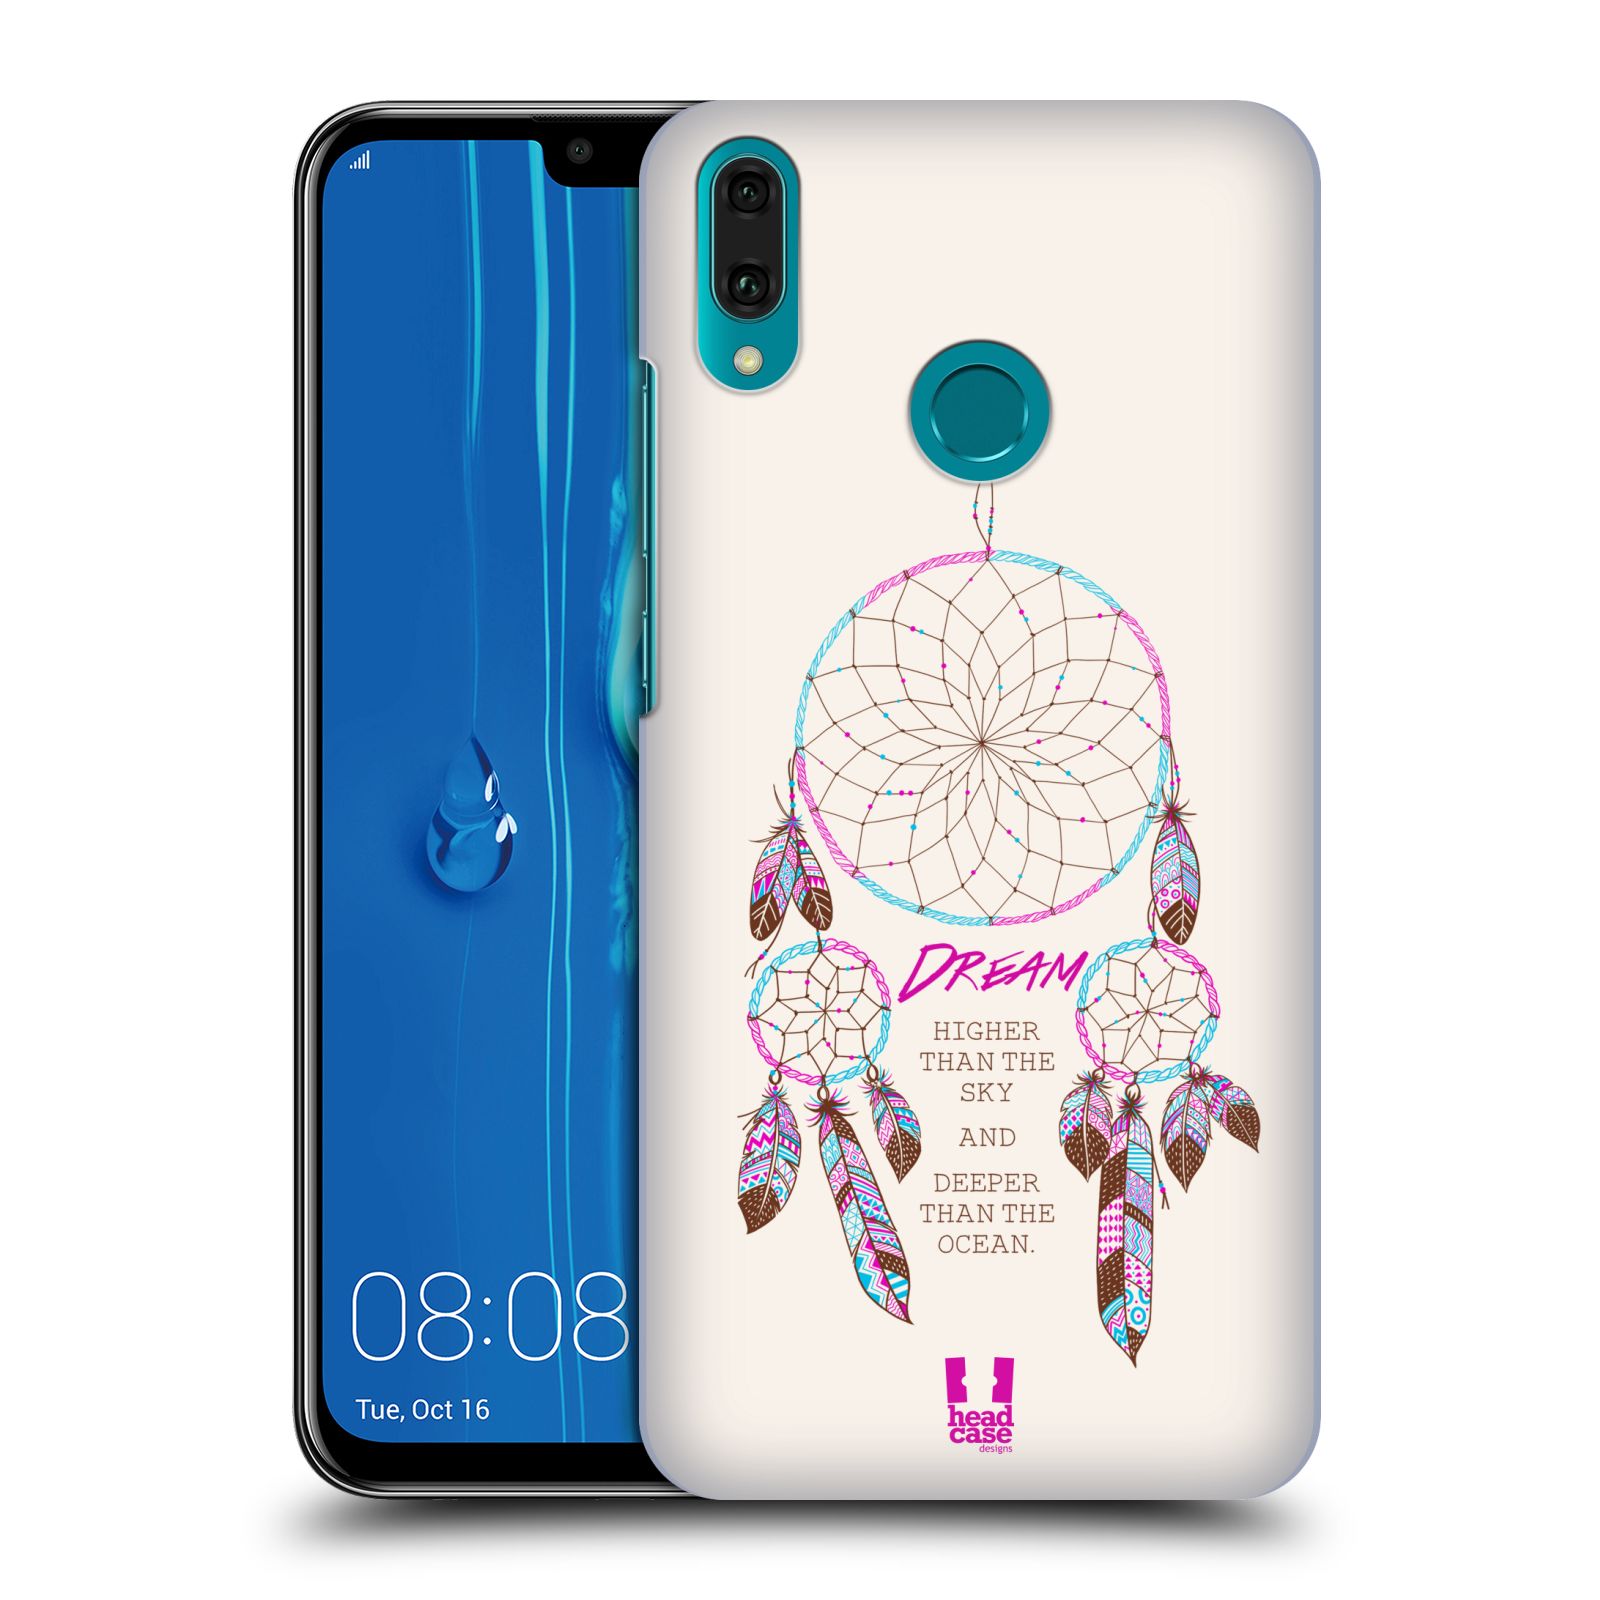 Pouzdro na mobil Huawei Y9 2019 - HEAD CASE - vzor Lapač snů růžová